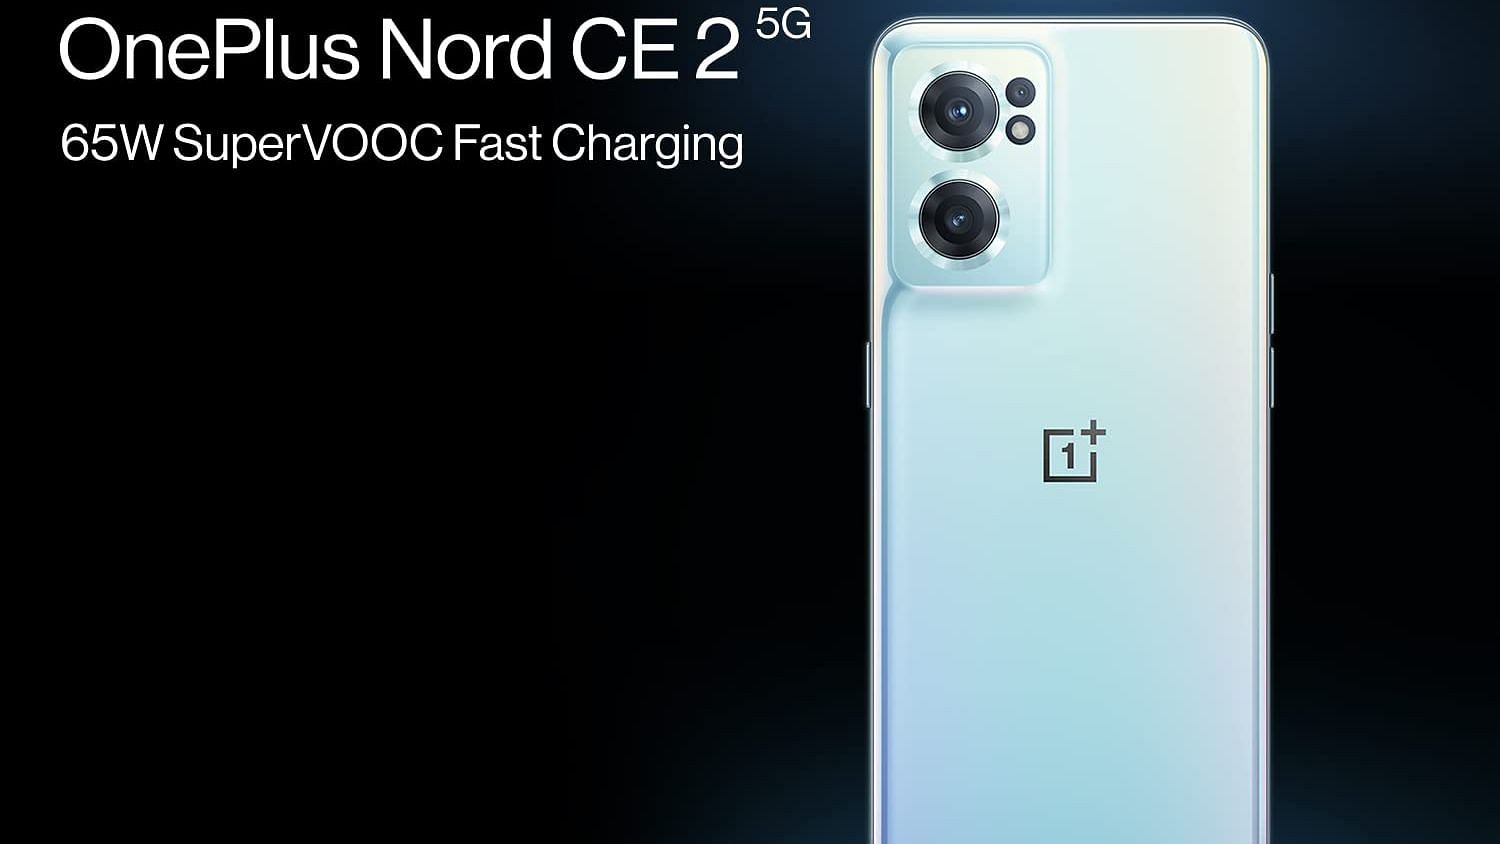 اطلاعاتی راجع به دوربین گوشی OnePlus Nord CE 2 منتشر شد